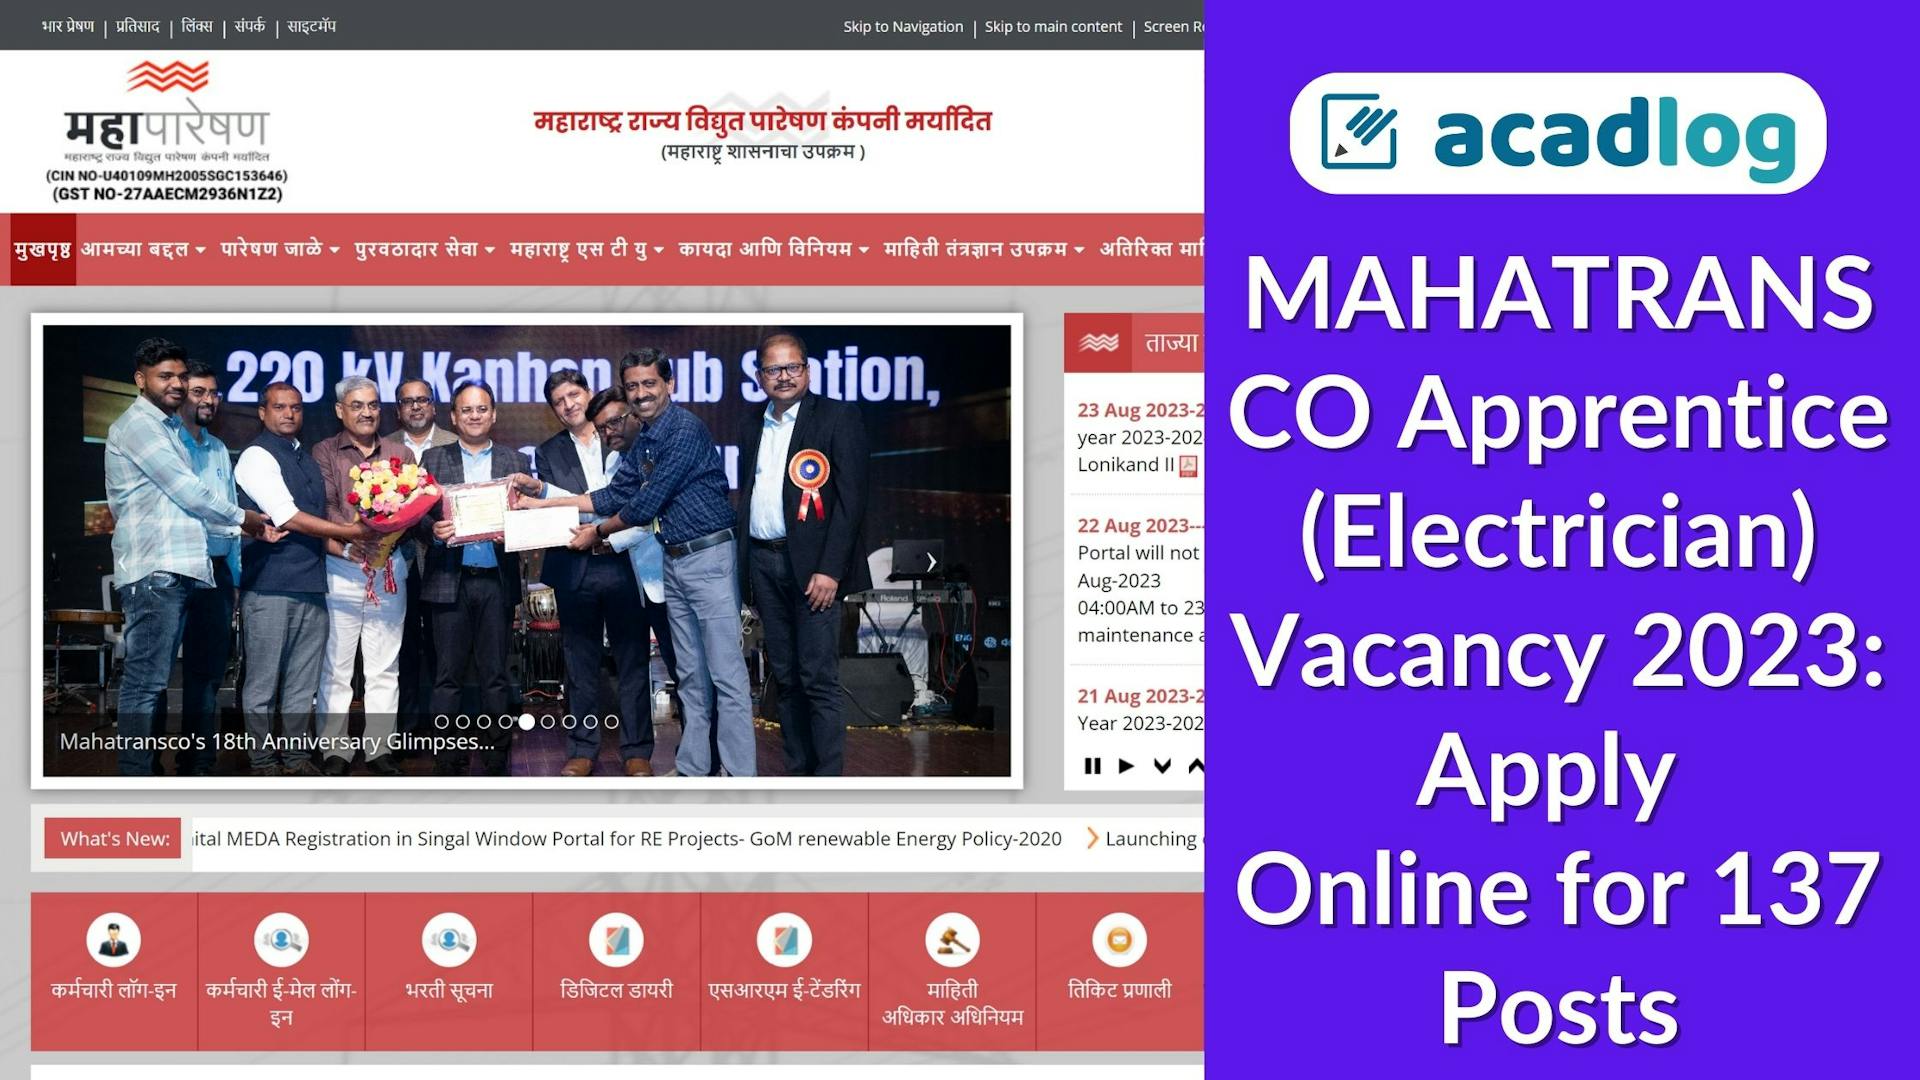 MAHATRANSCO Apprentice (Electrician) Vacancy 2023: Apply Online for 137 Posts